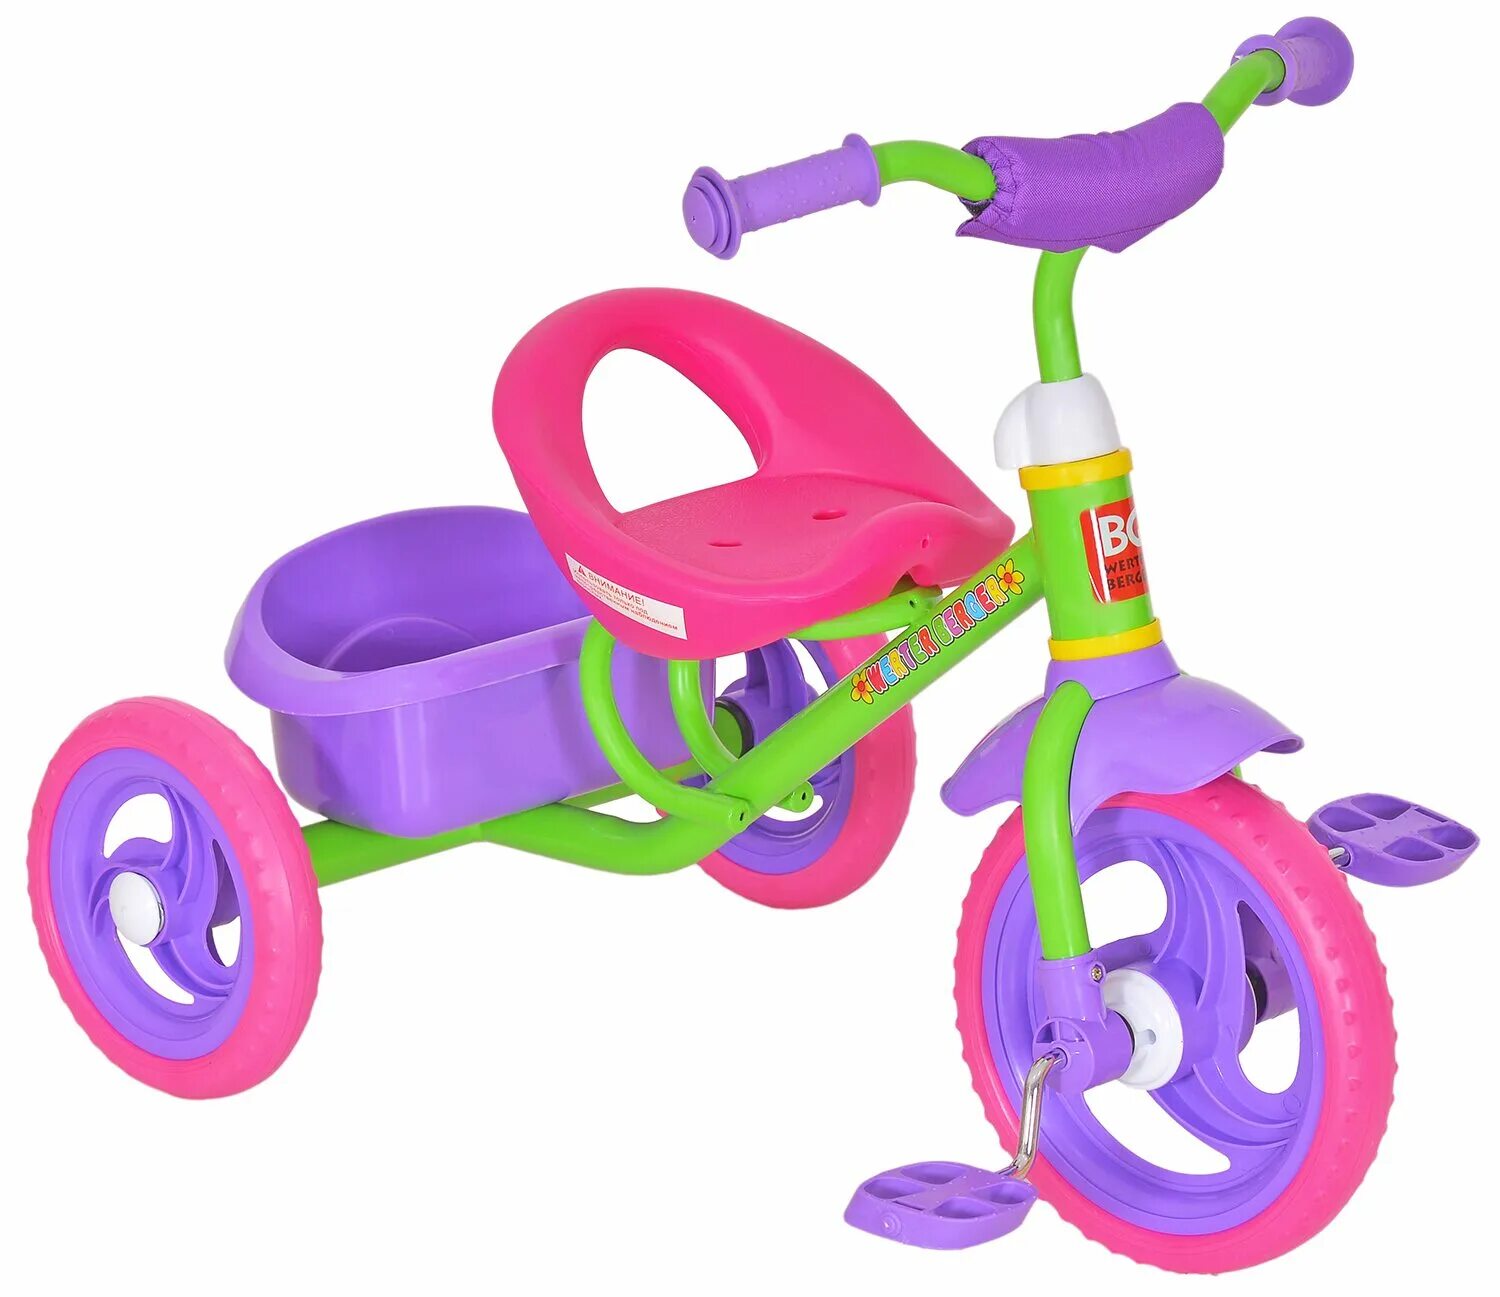 Werter berger велосипед детский трехколесный. Werter Berger велосипед. Велосипед детский трёхколёсный Вертер Бергер. Велосипед трёхколёсный детский Рич Фэмили. Велосипед Рич Фэмили трехколесный.